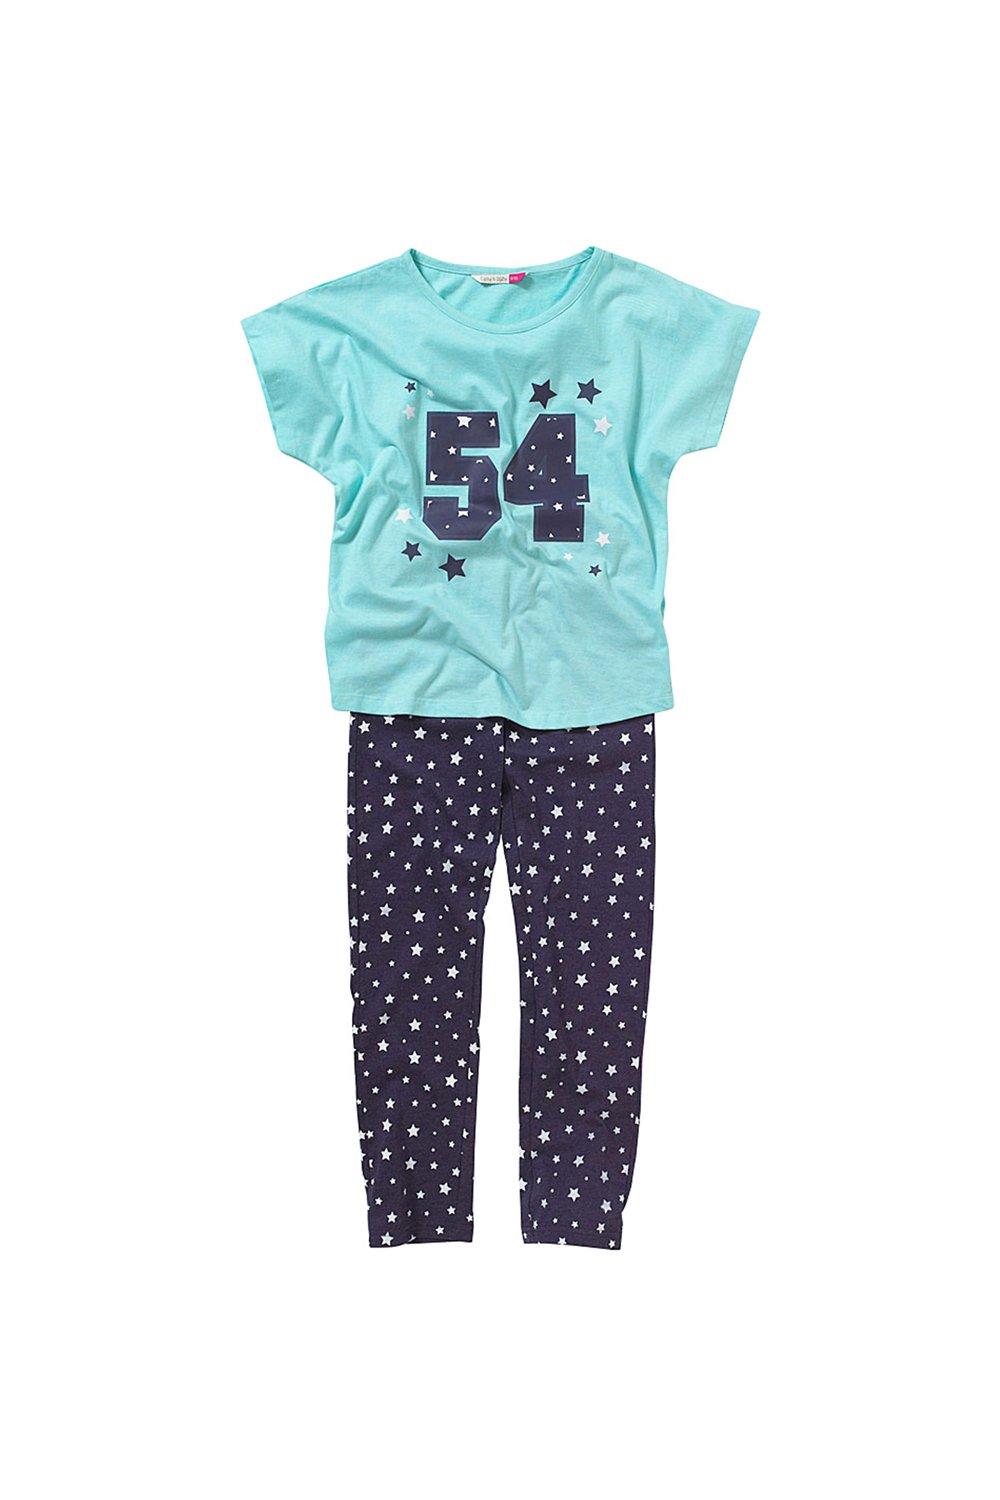 Университетский пижамный комплект Girls 54 Cozy n Dozy, синий